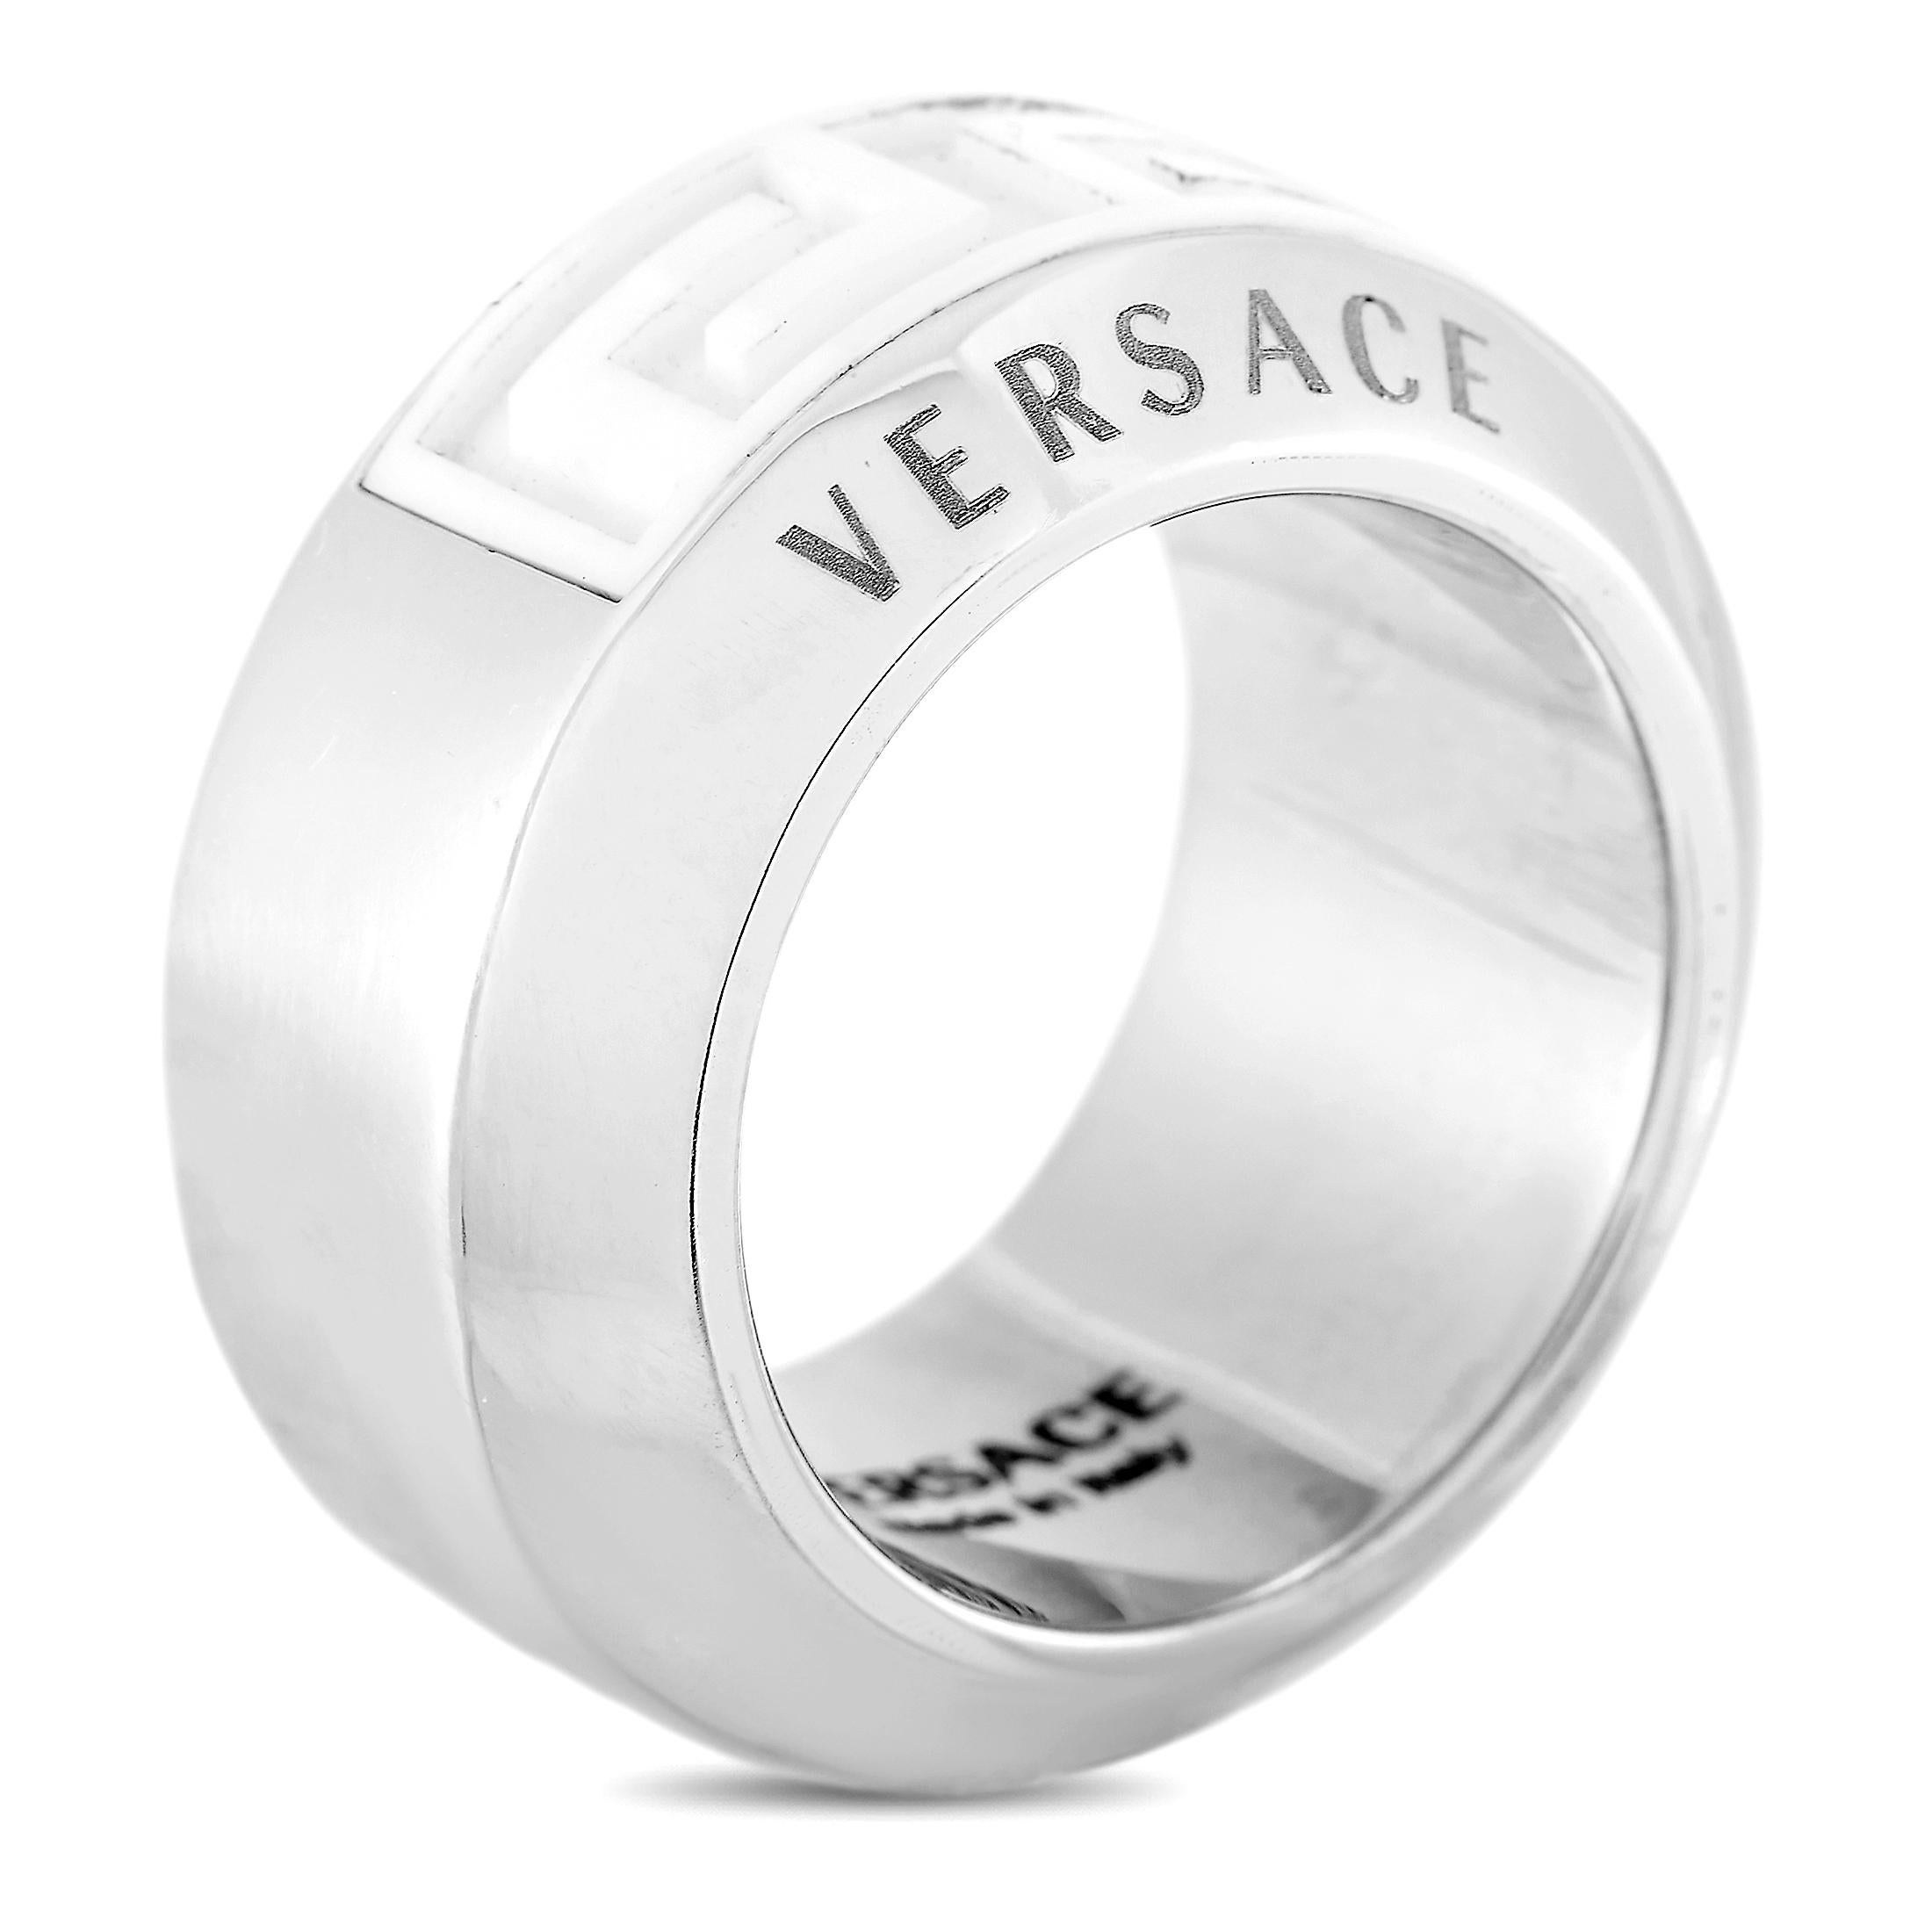 Dieser Ring von Versace besteht aus 18 Karat Weißgold und Keramik, wiegt 19,4 Gramm und hat eine Bandstärke von 12 mm.
 
 Der Ring wird in brandneuem Zustand angeboten und enthält die Herstellerbox.
